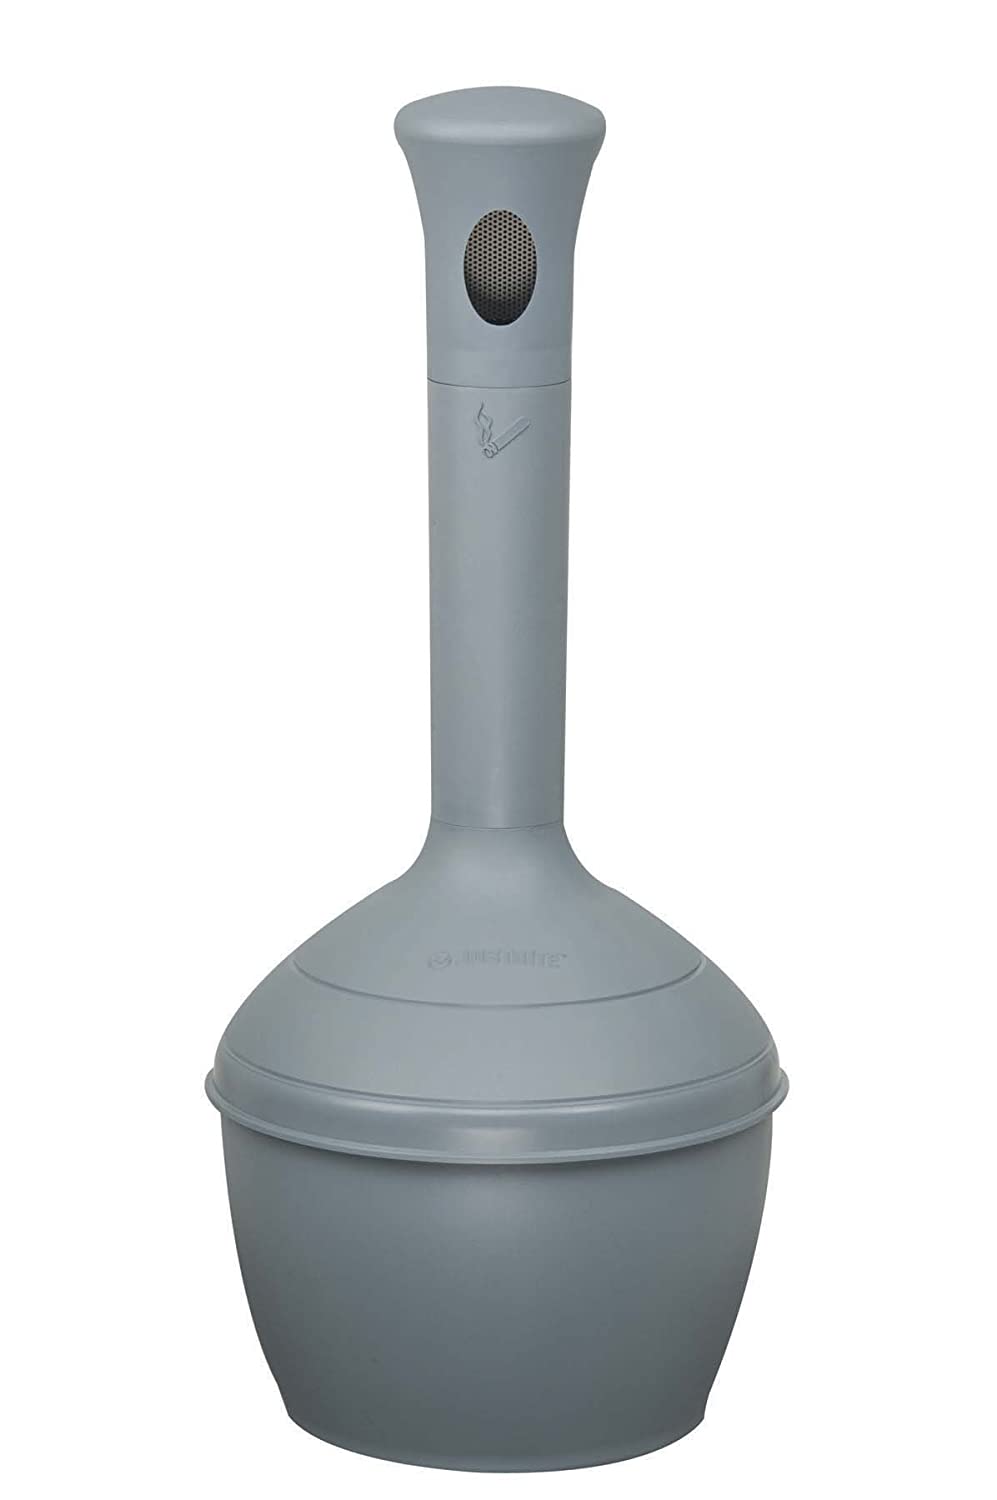 Justrite Sicherheits-Standascher aus Kunststoff Elite Smoker Cease Fire® | 15 Liter Innenbehälter, selbstlöschend | HxB 97x31cm | Grau